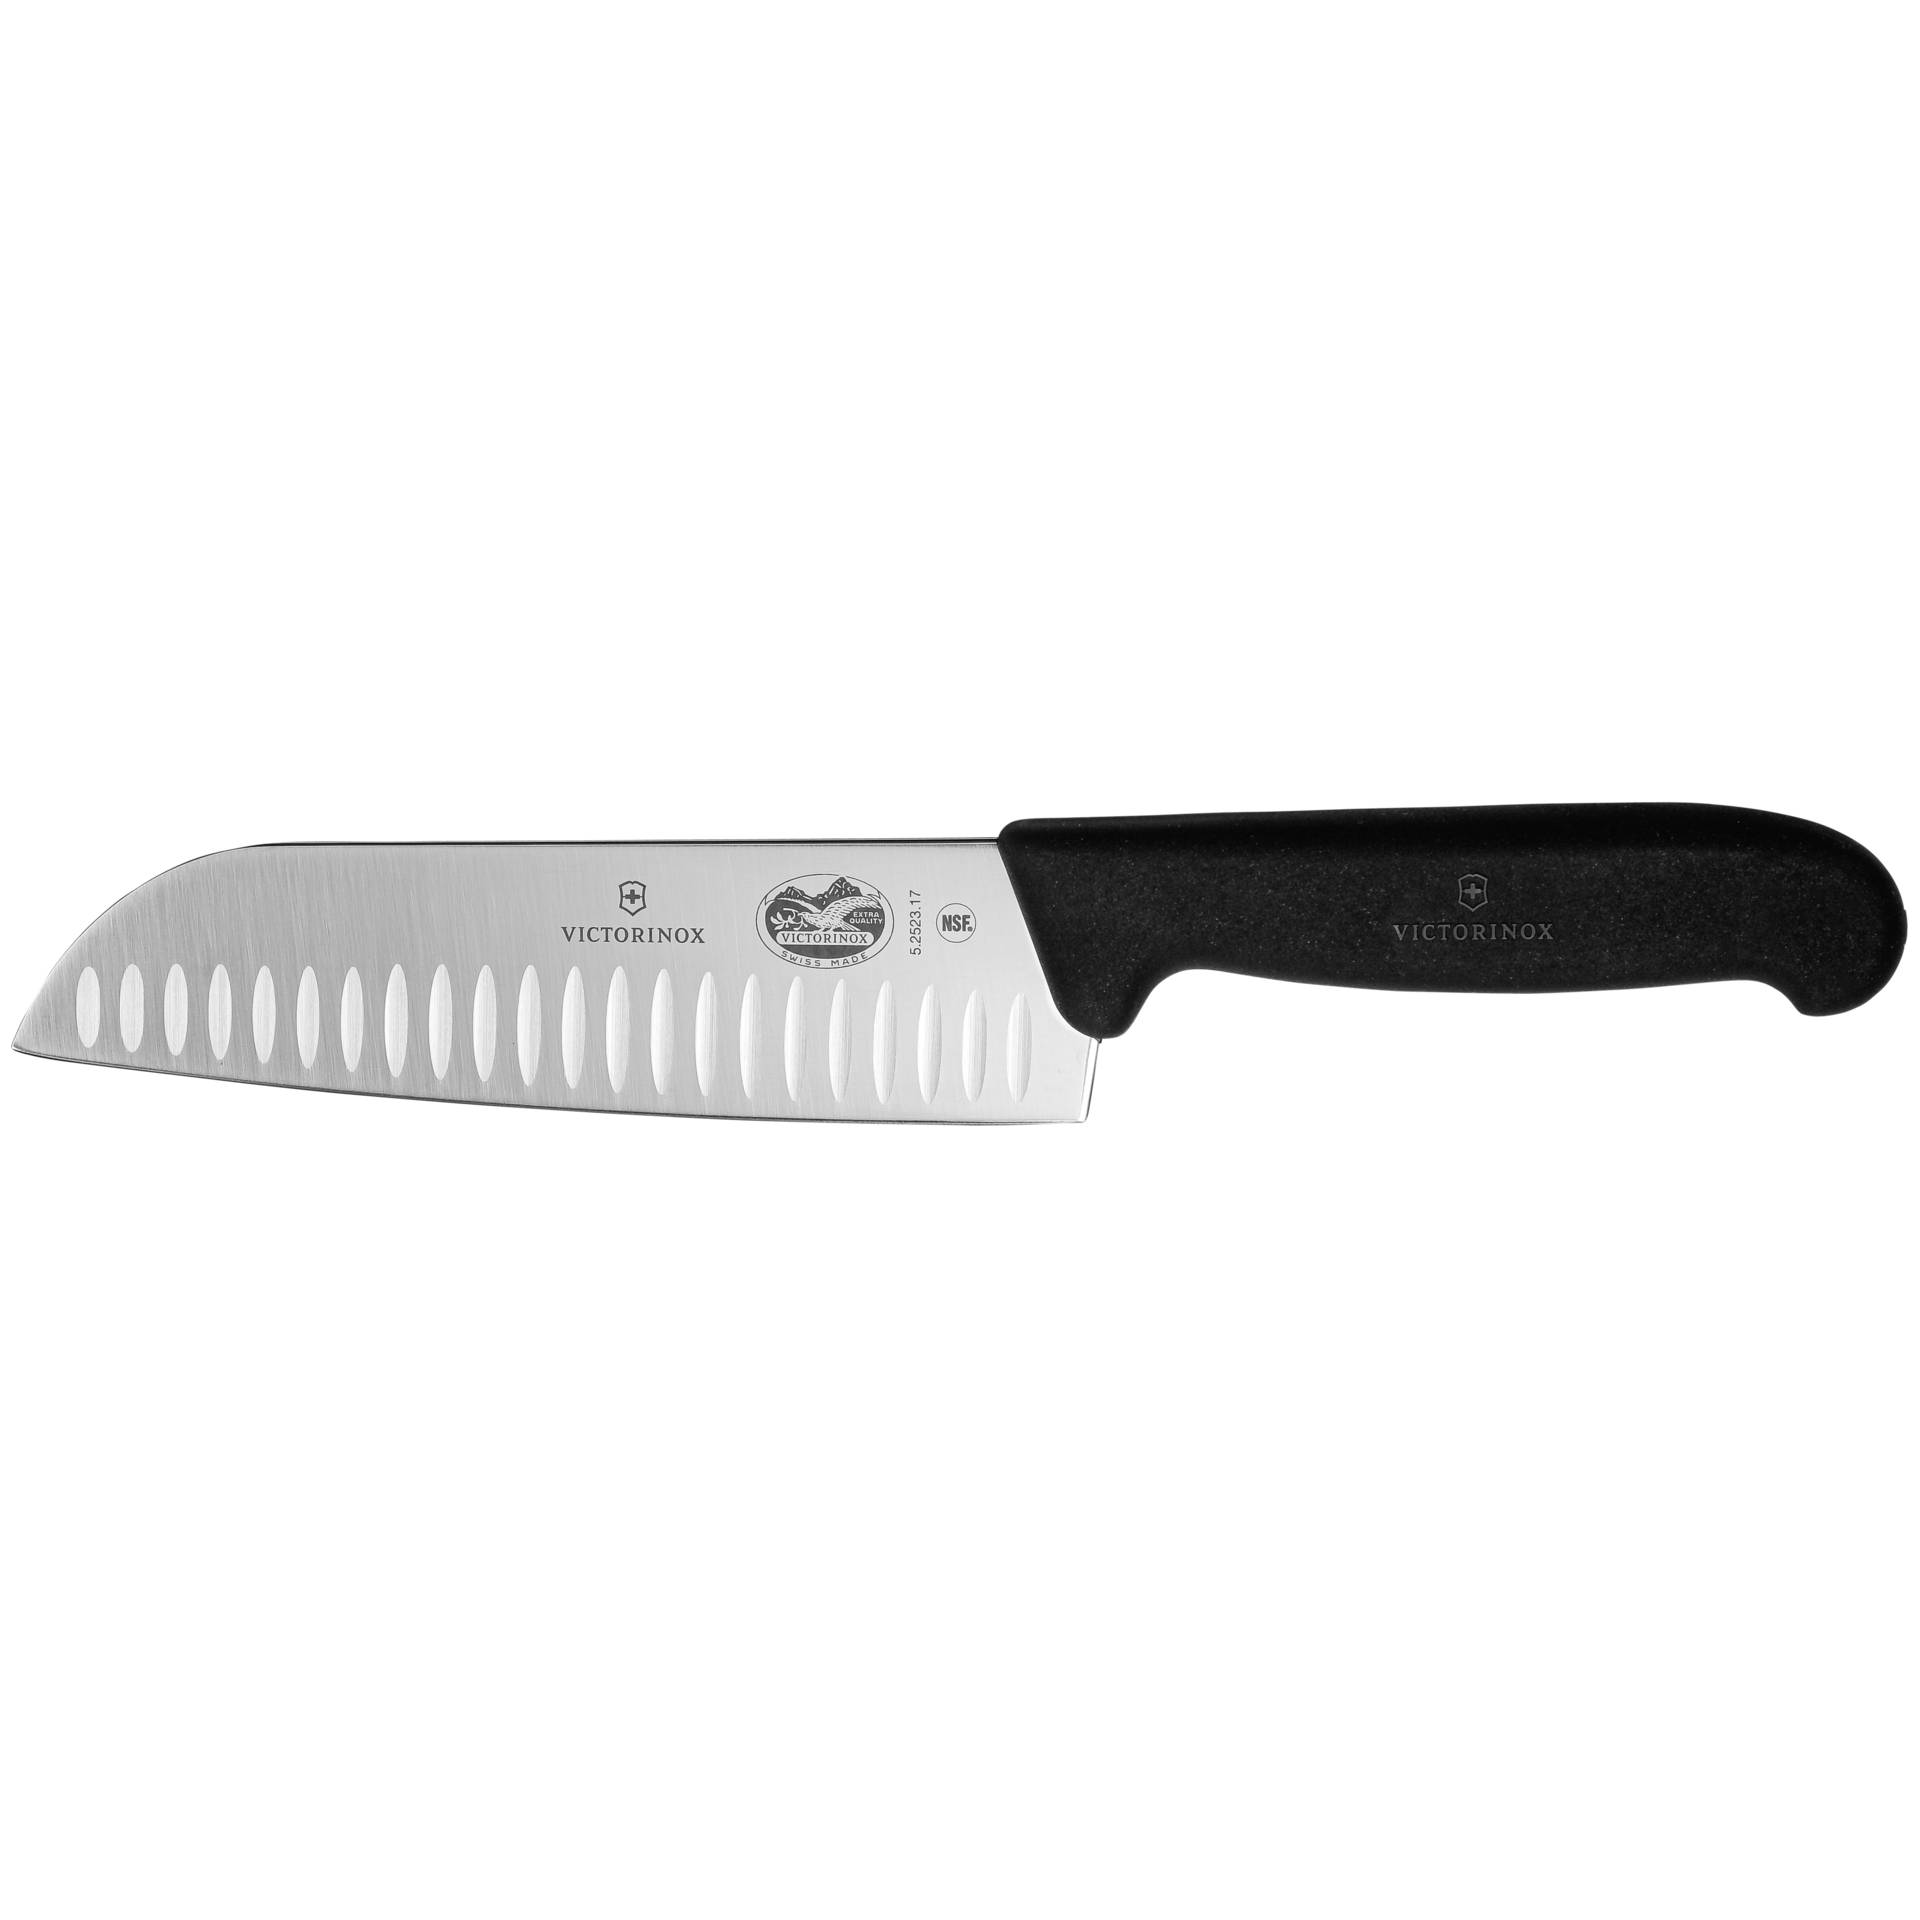 Victorinox Fibrox coltello santoku 17 cm